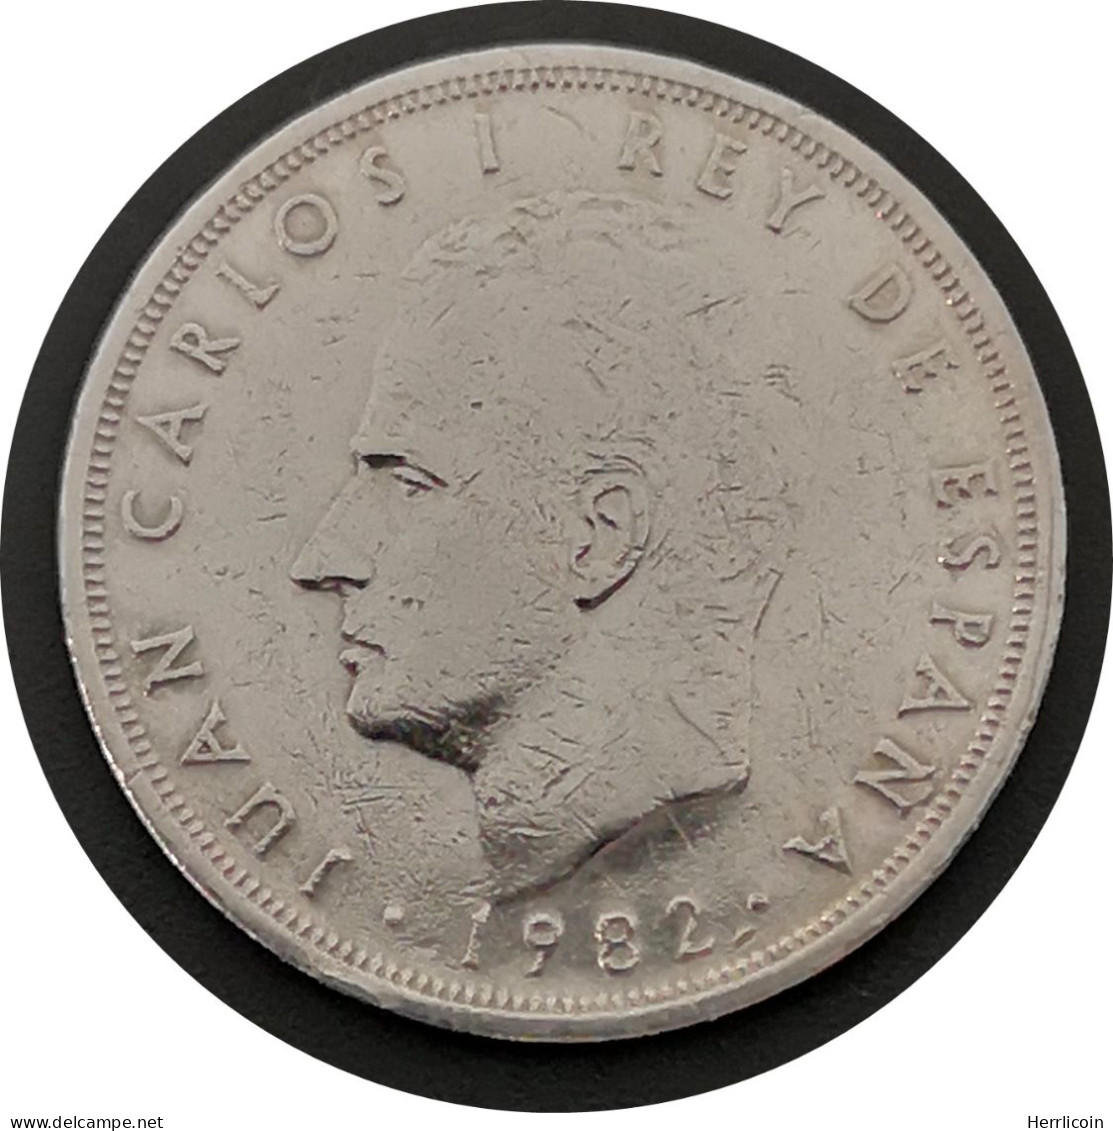 Monnaie Espagne - 1982 - 5 Pesetas Juan Carlos I M Couronné - 5 Pesetas